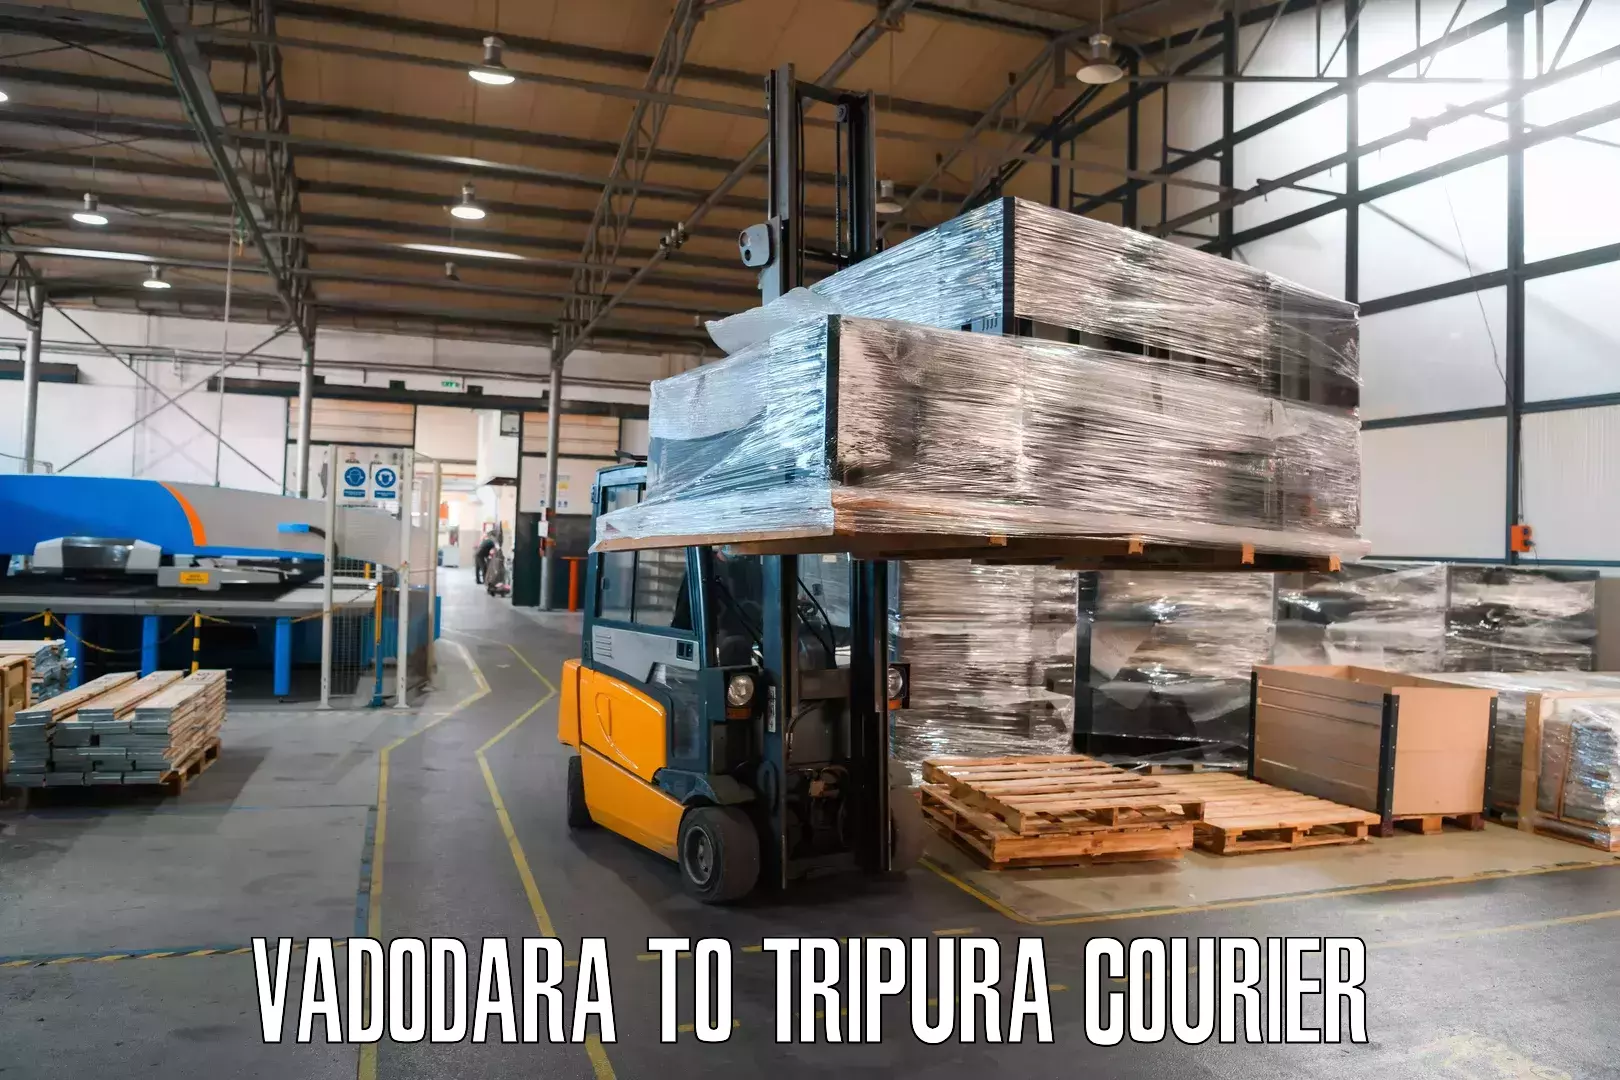 Cargo courier service Vadodara to Tripura